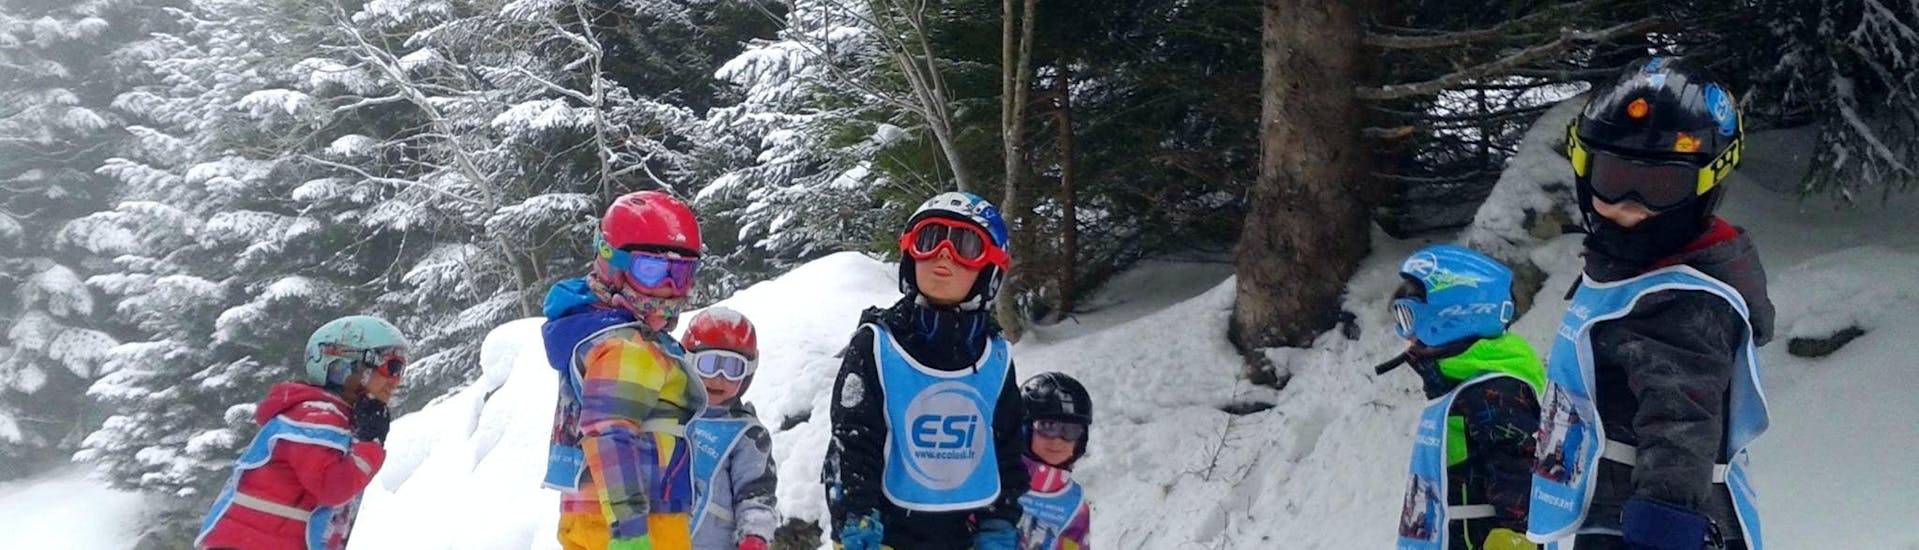 Kinder-Skikurs ab 5 Jahren für Anfänger.